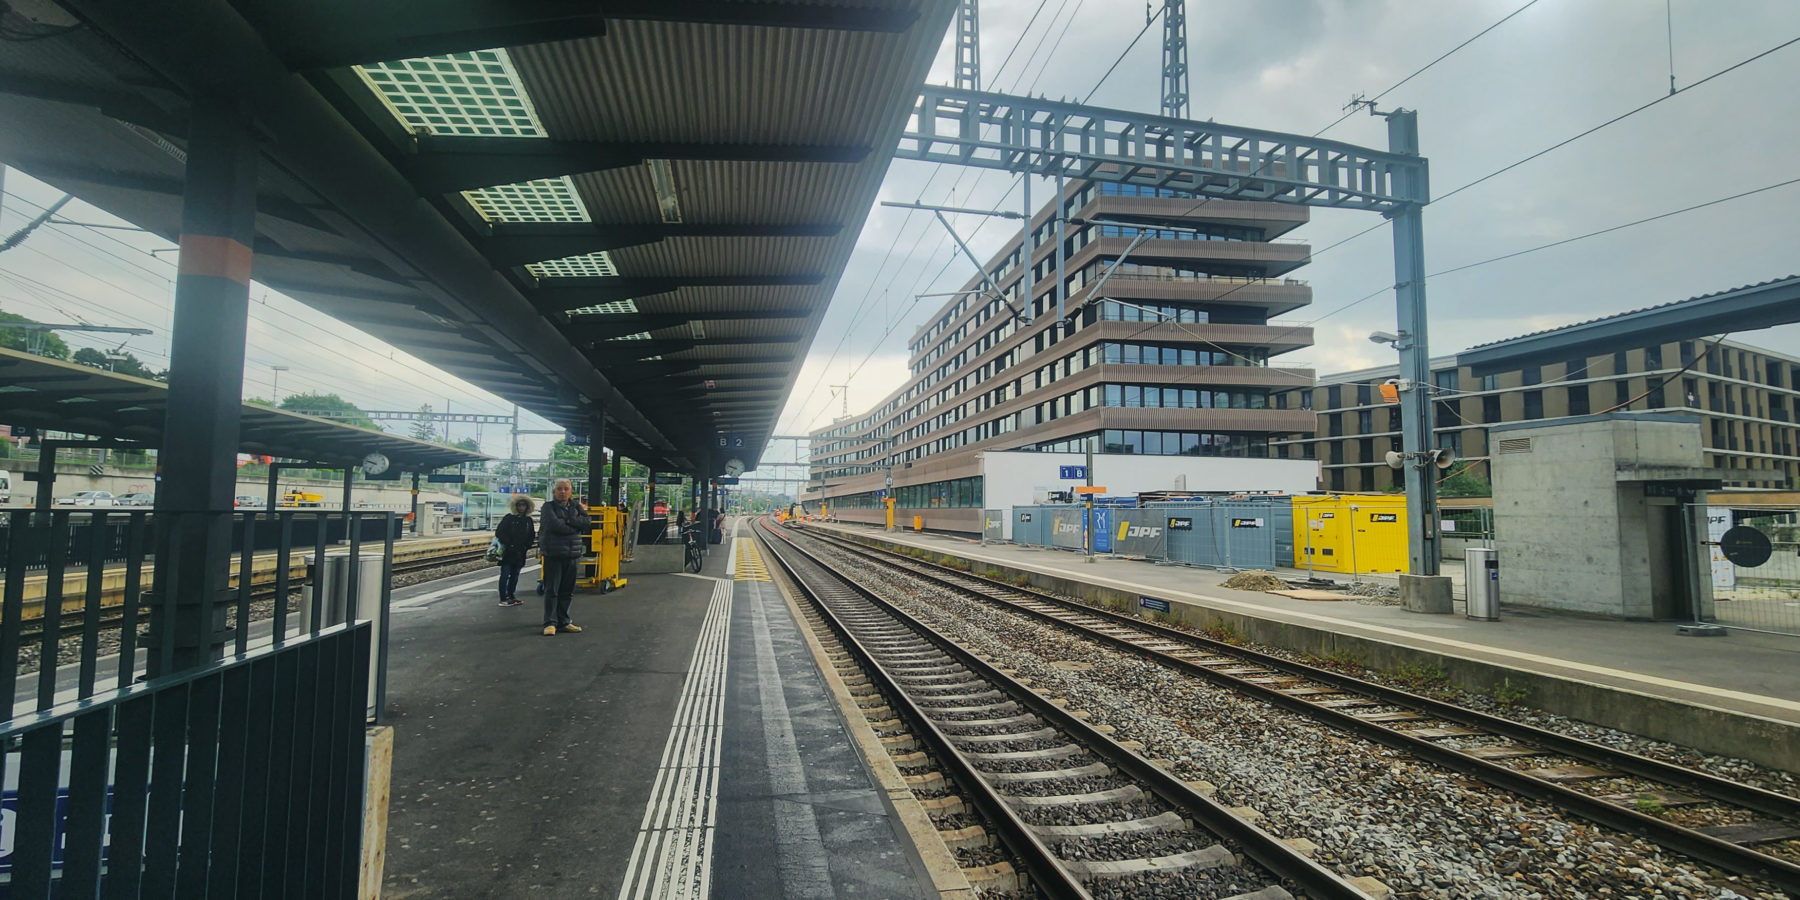 Gare de Morges